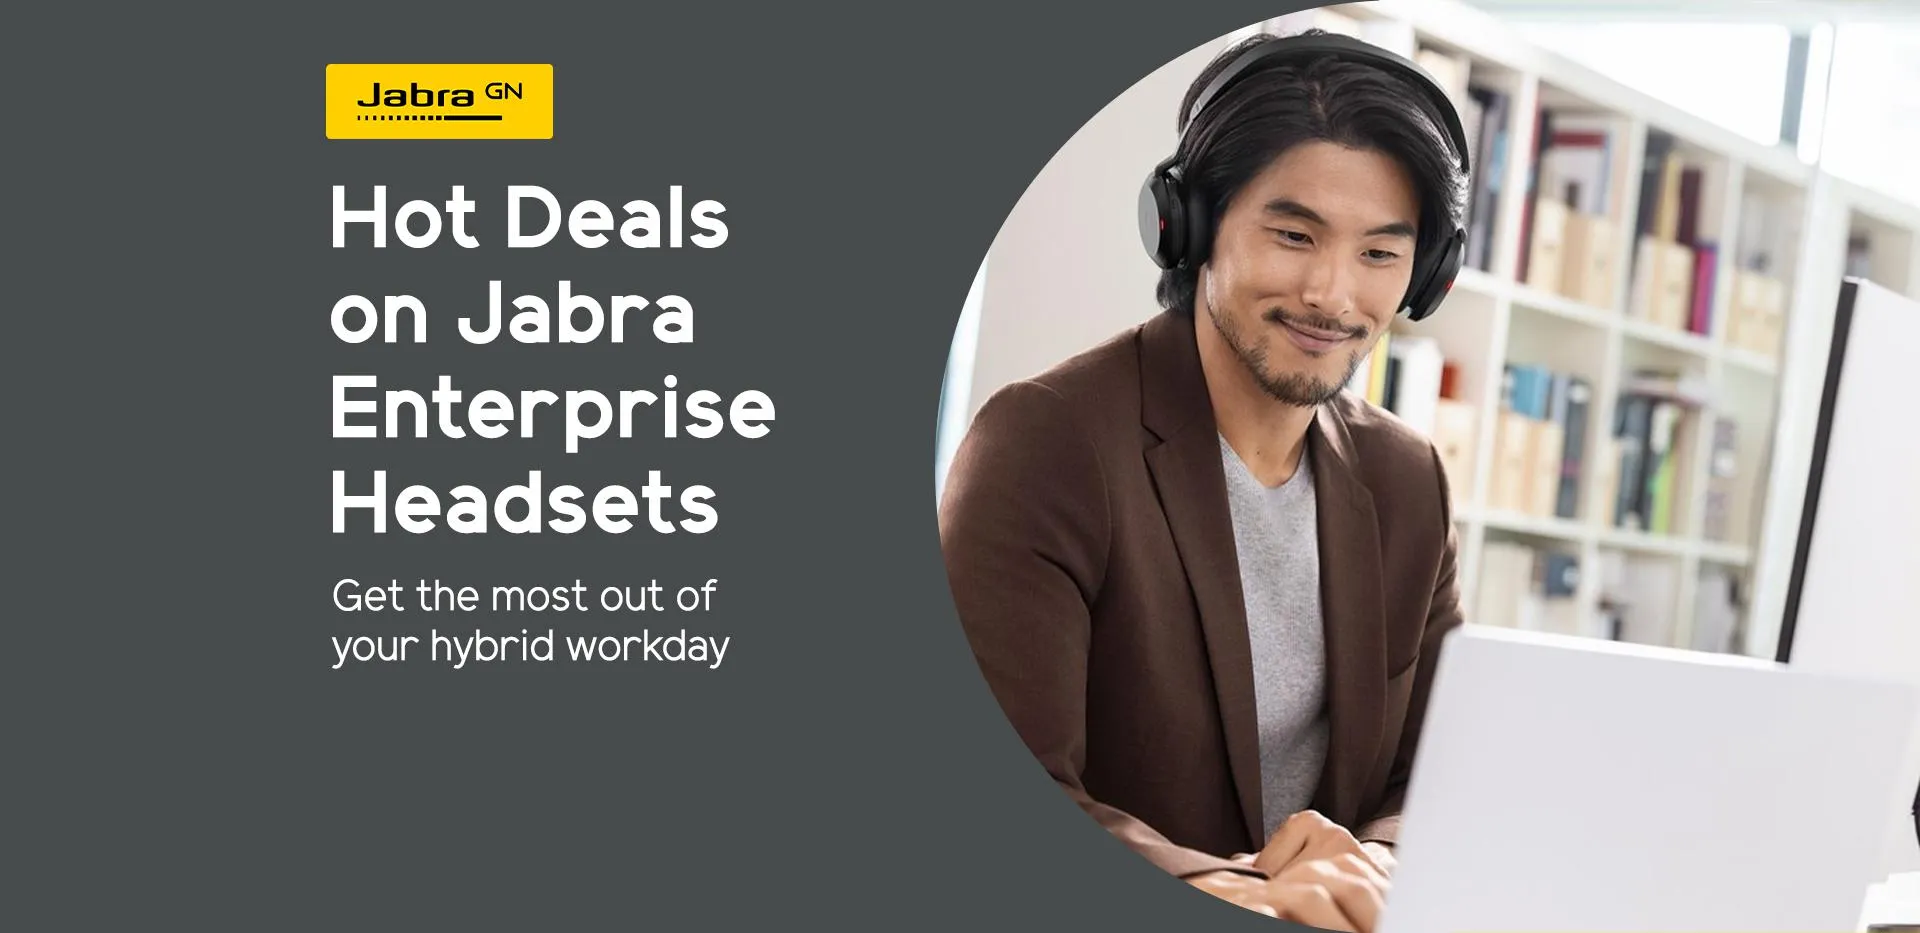 Hot deals on selected Jabra Enterprise